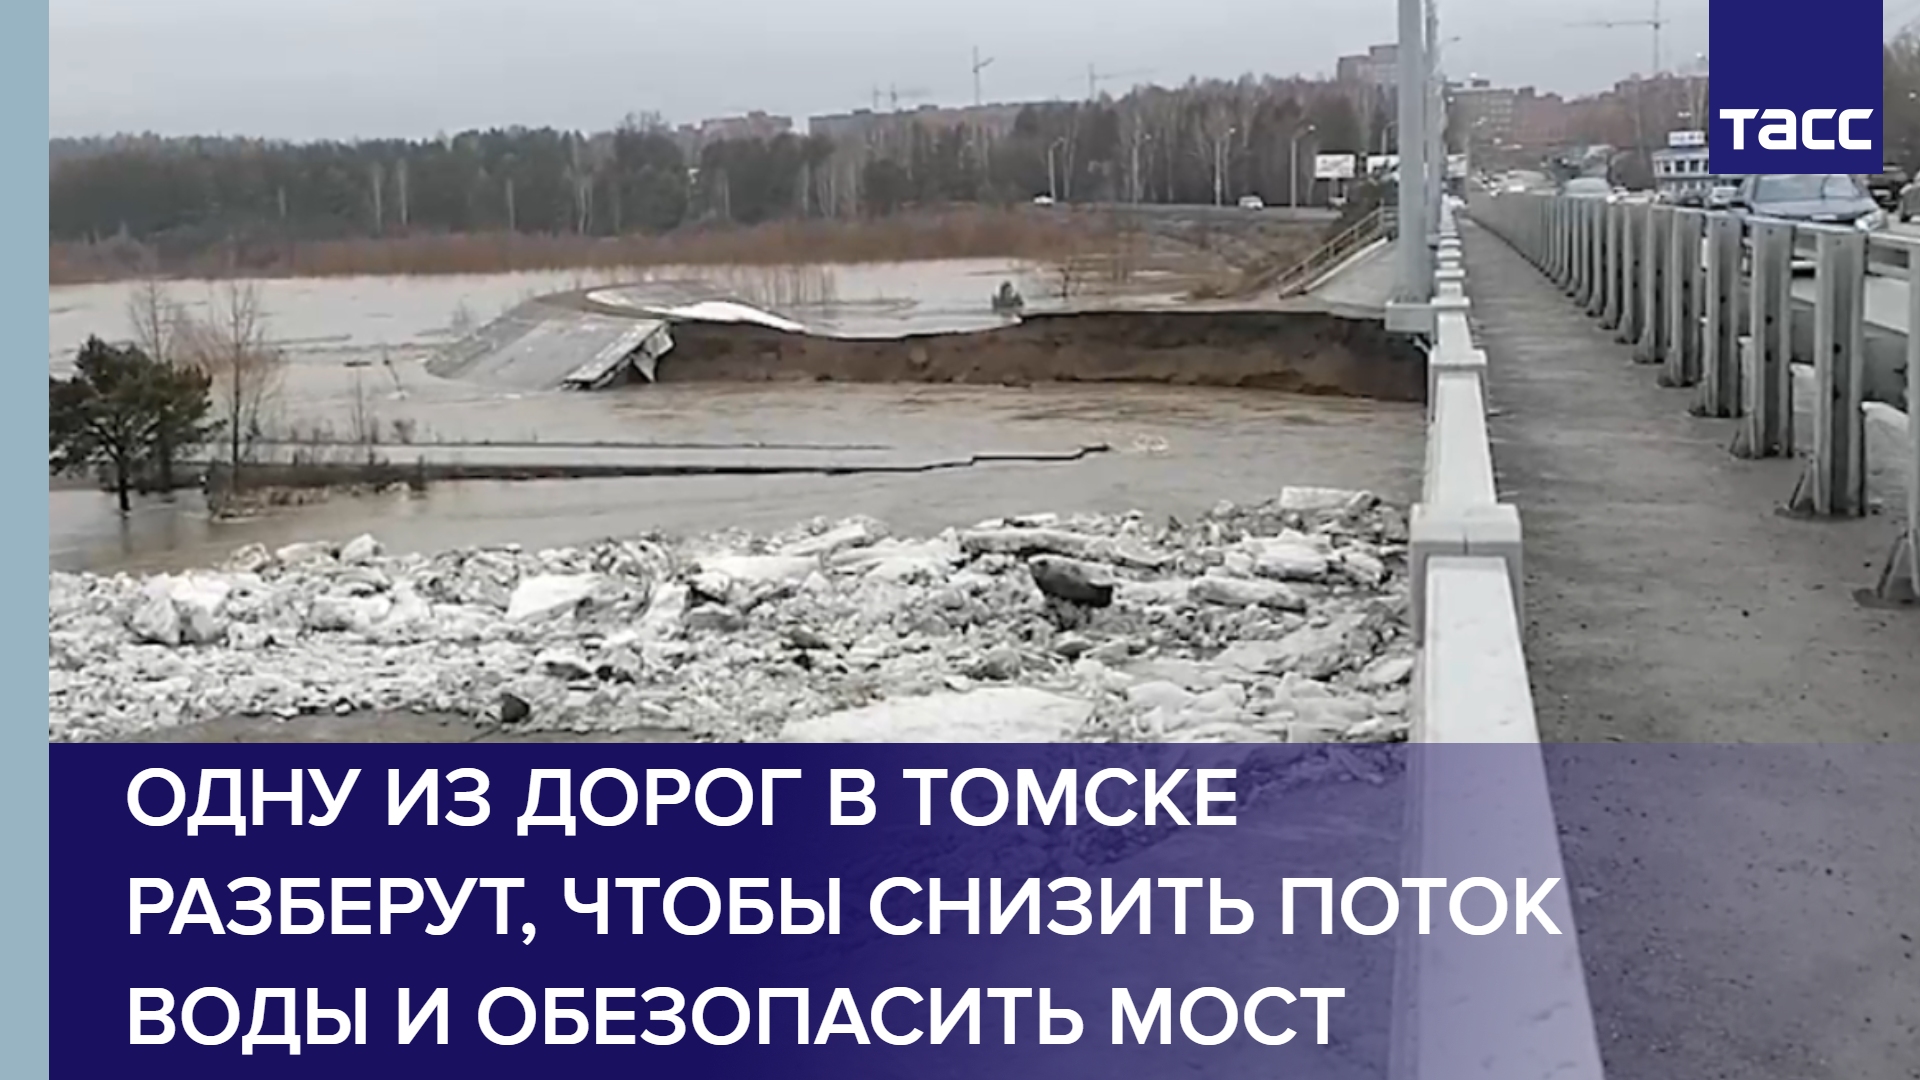 Одну из дорог в Томске разберут, чтобы снизить поток воды и обезопасить мост